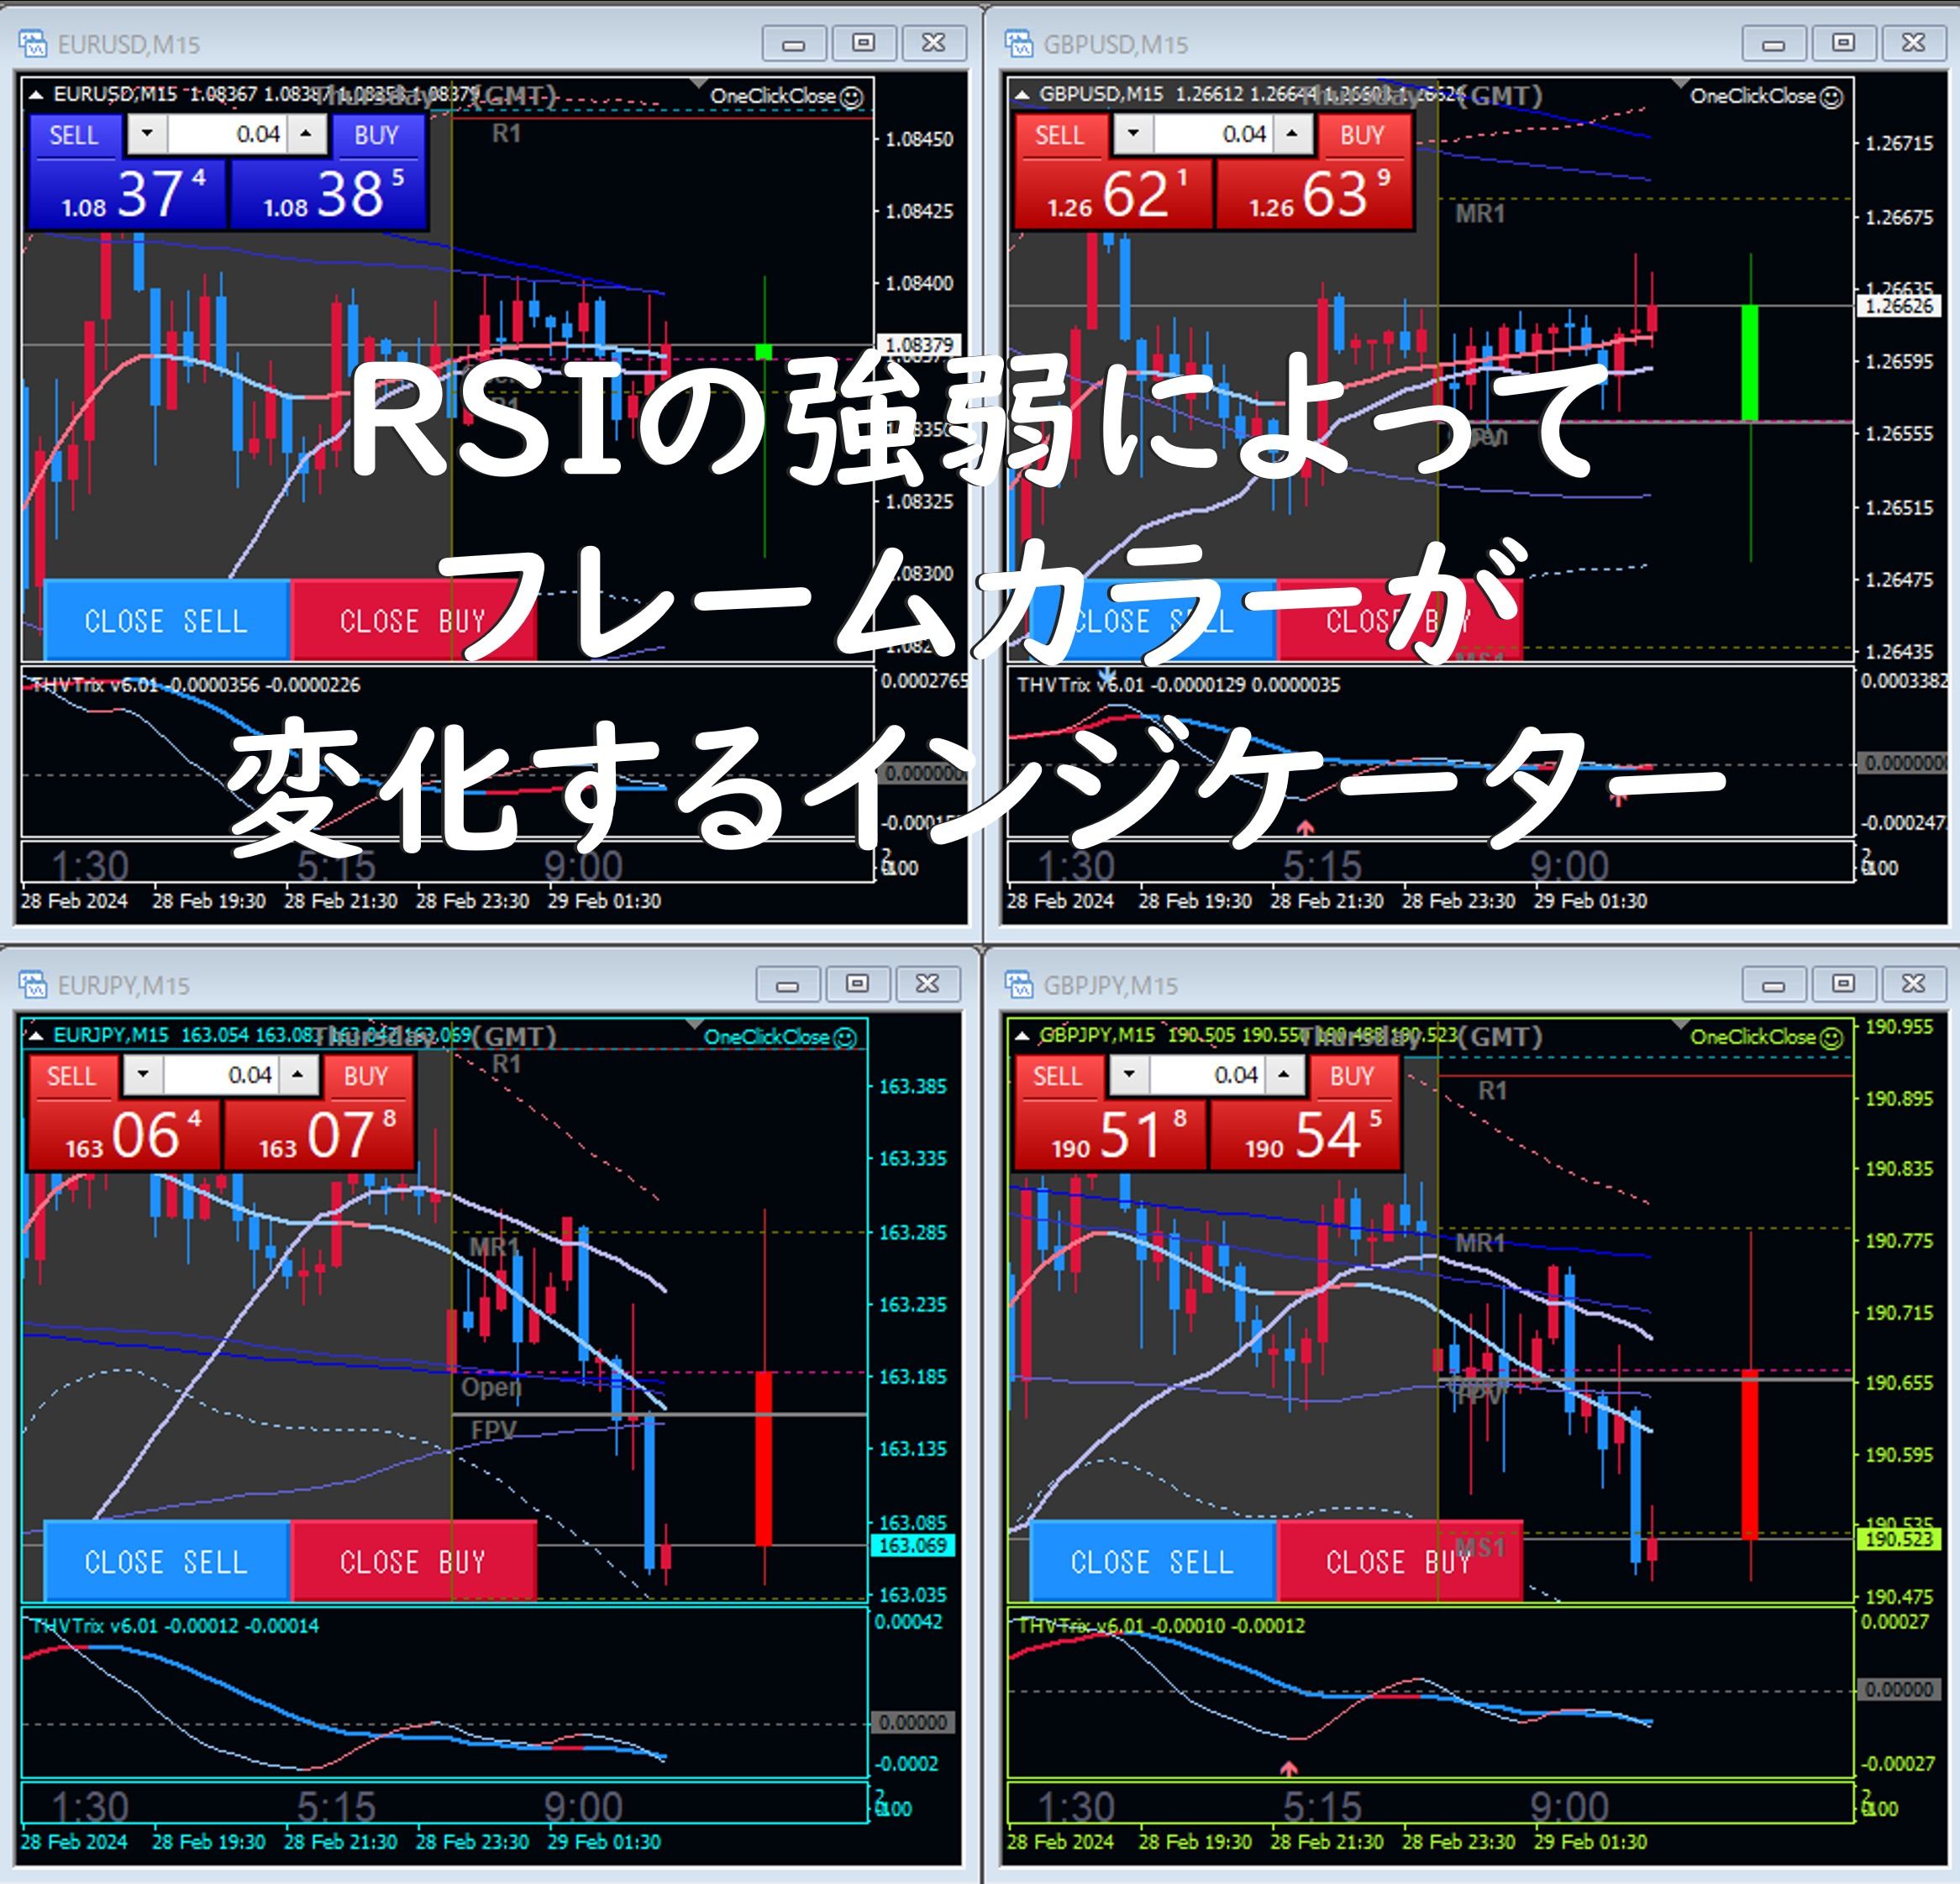 RSIの値によってチャート内のフレーム、テキスト（前景色）の色が変化するインジケーター